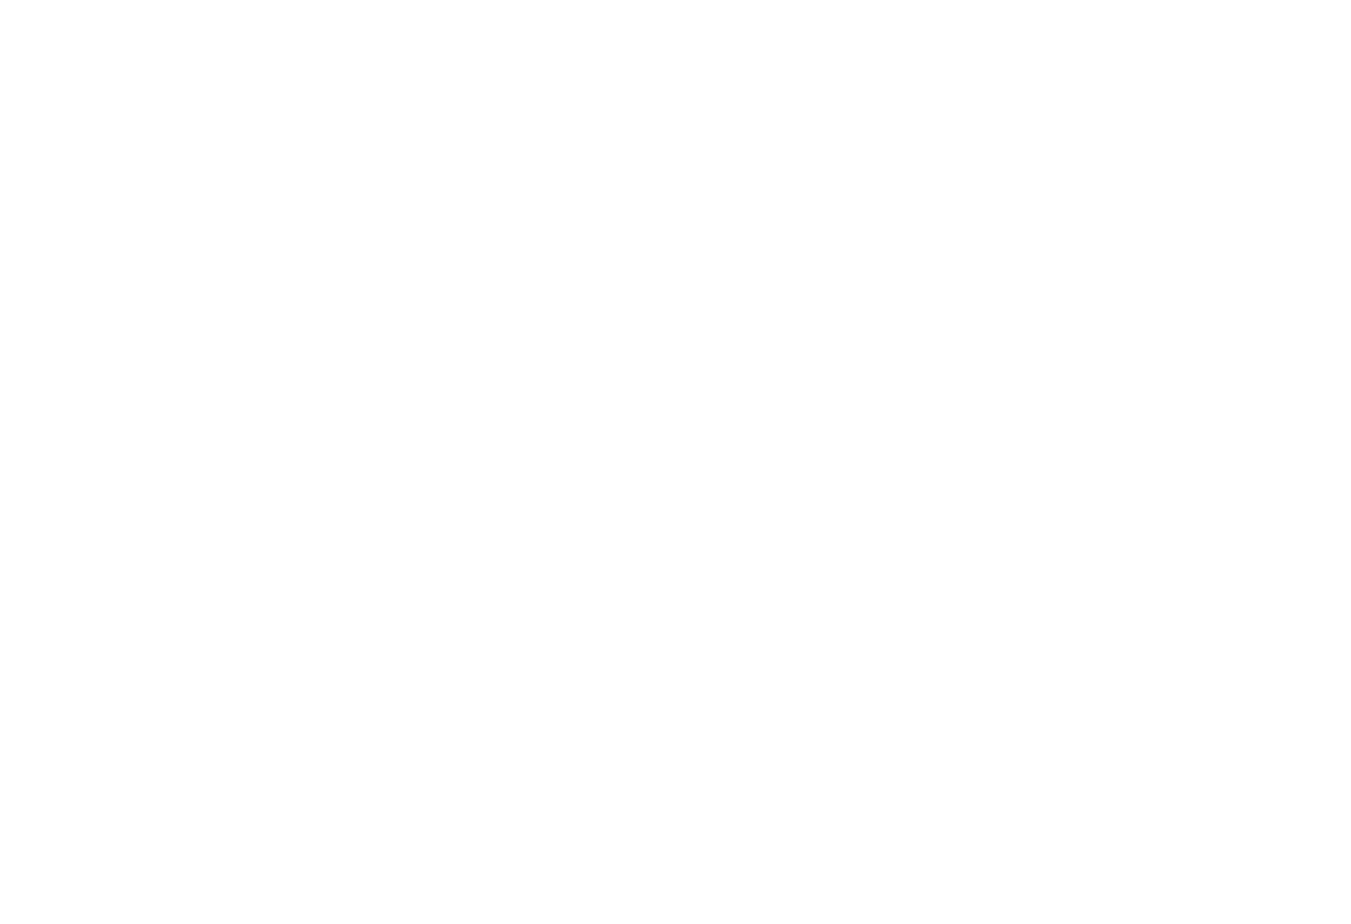 Market Quarter logo.